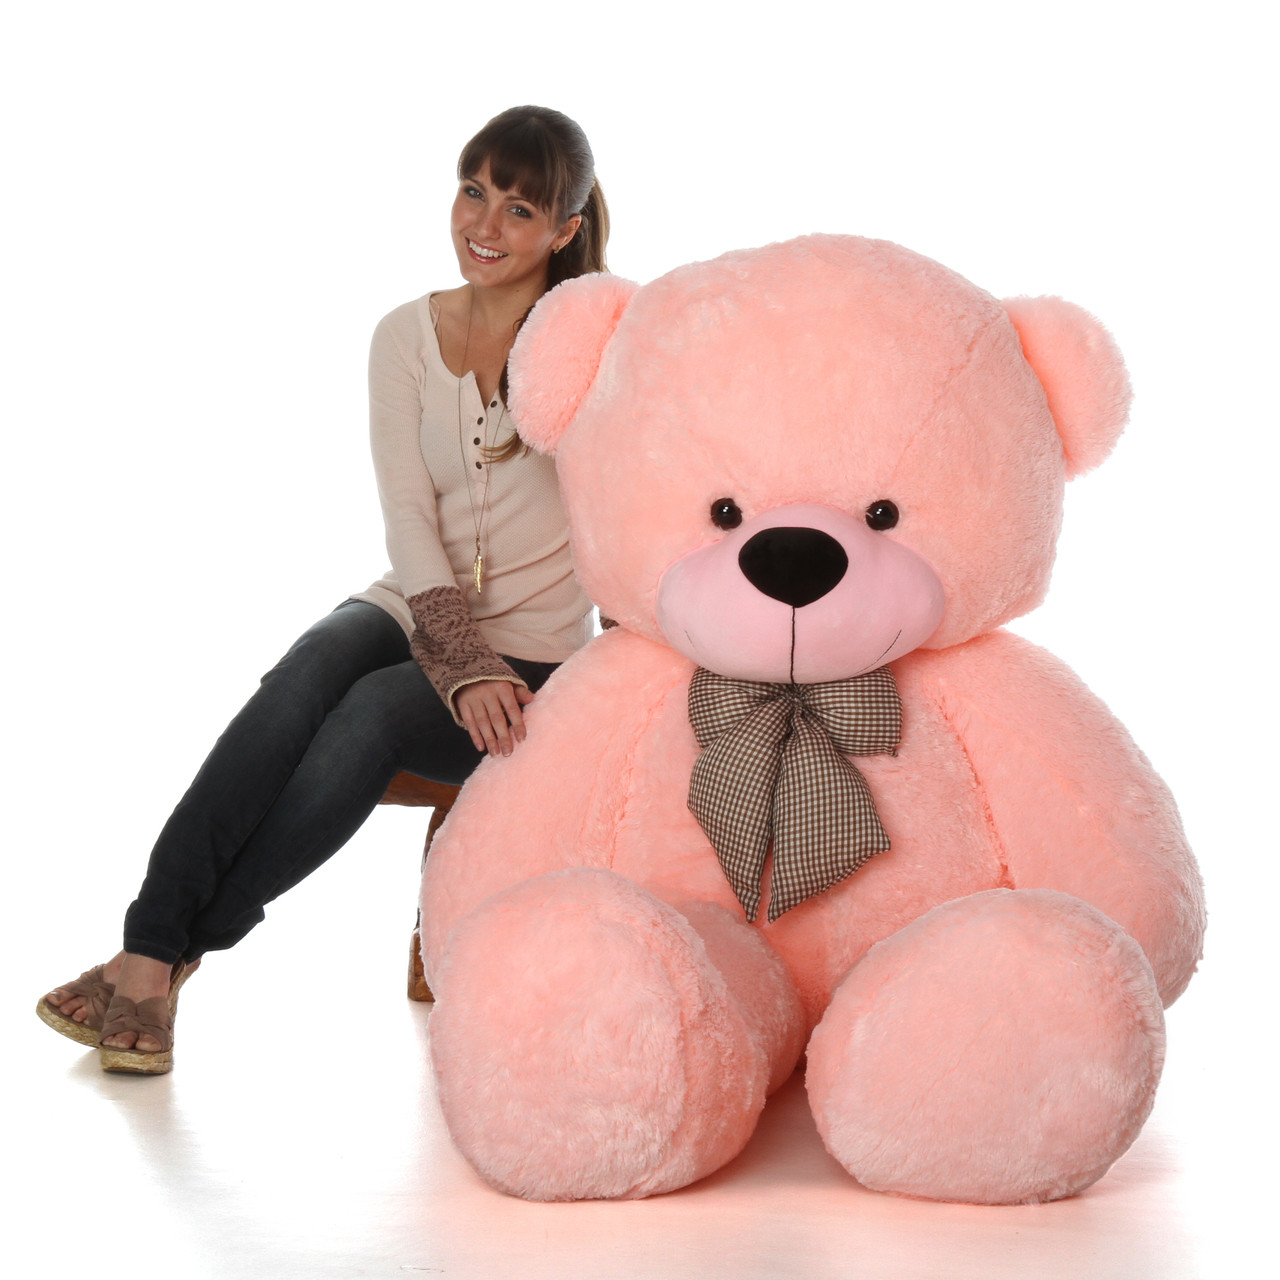 Life Size Teddy Bear | Stuffed Bears - Giant Teddy Bear